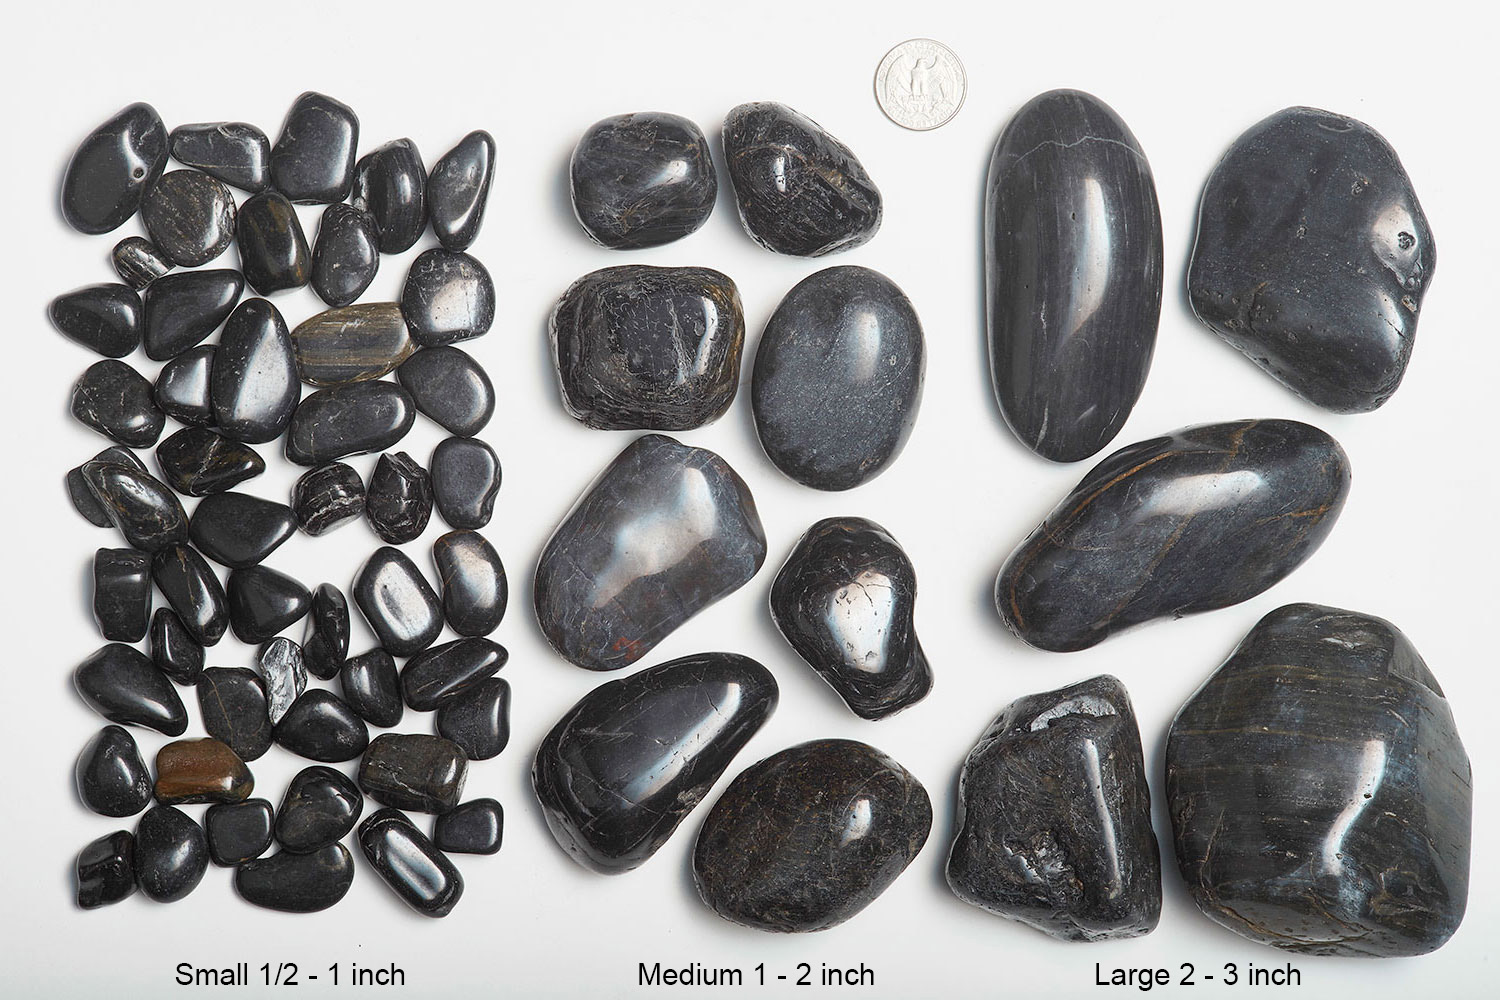 pebbles-size-comparison-sizes